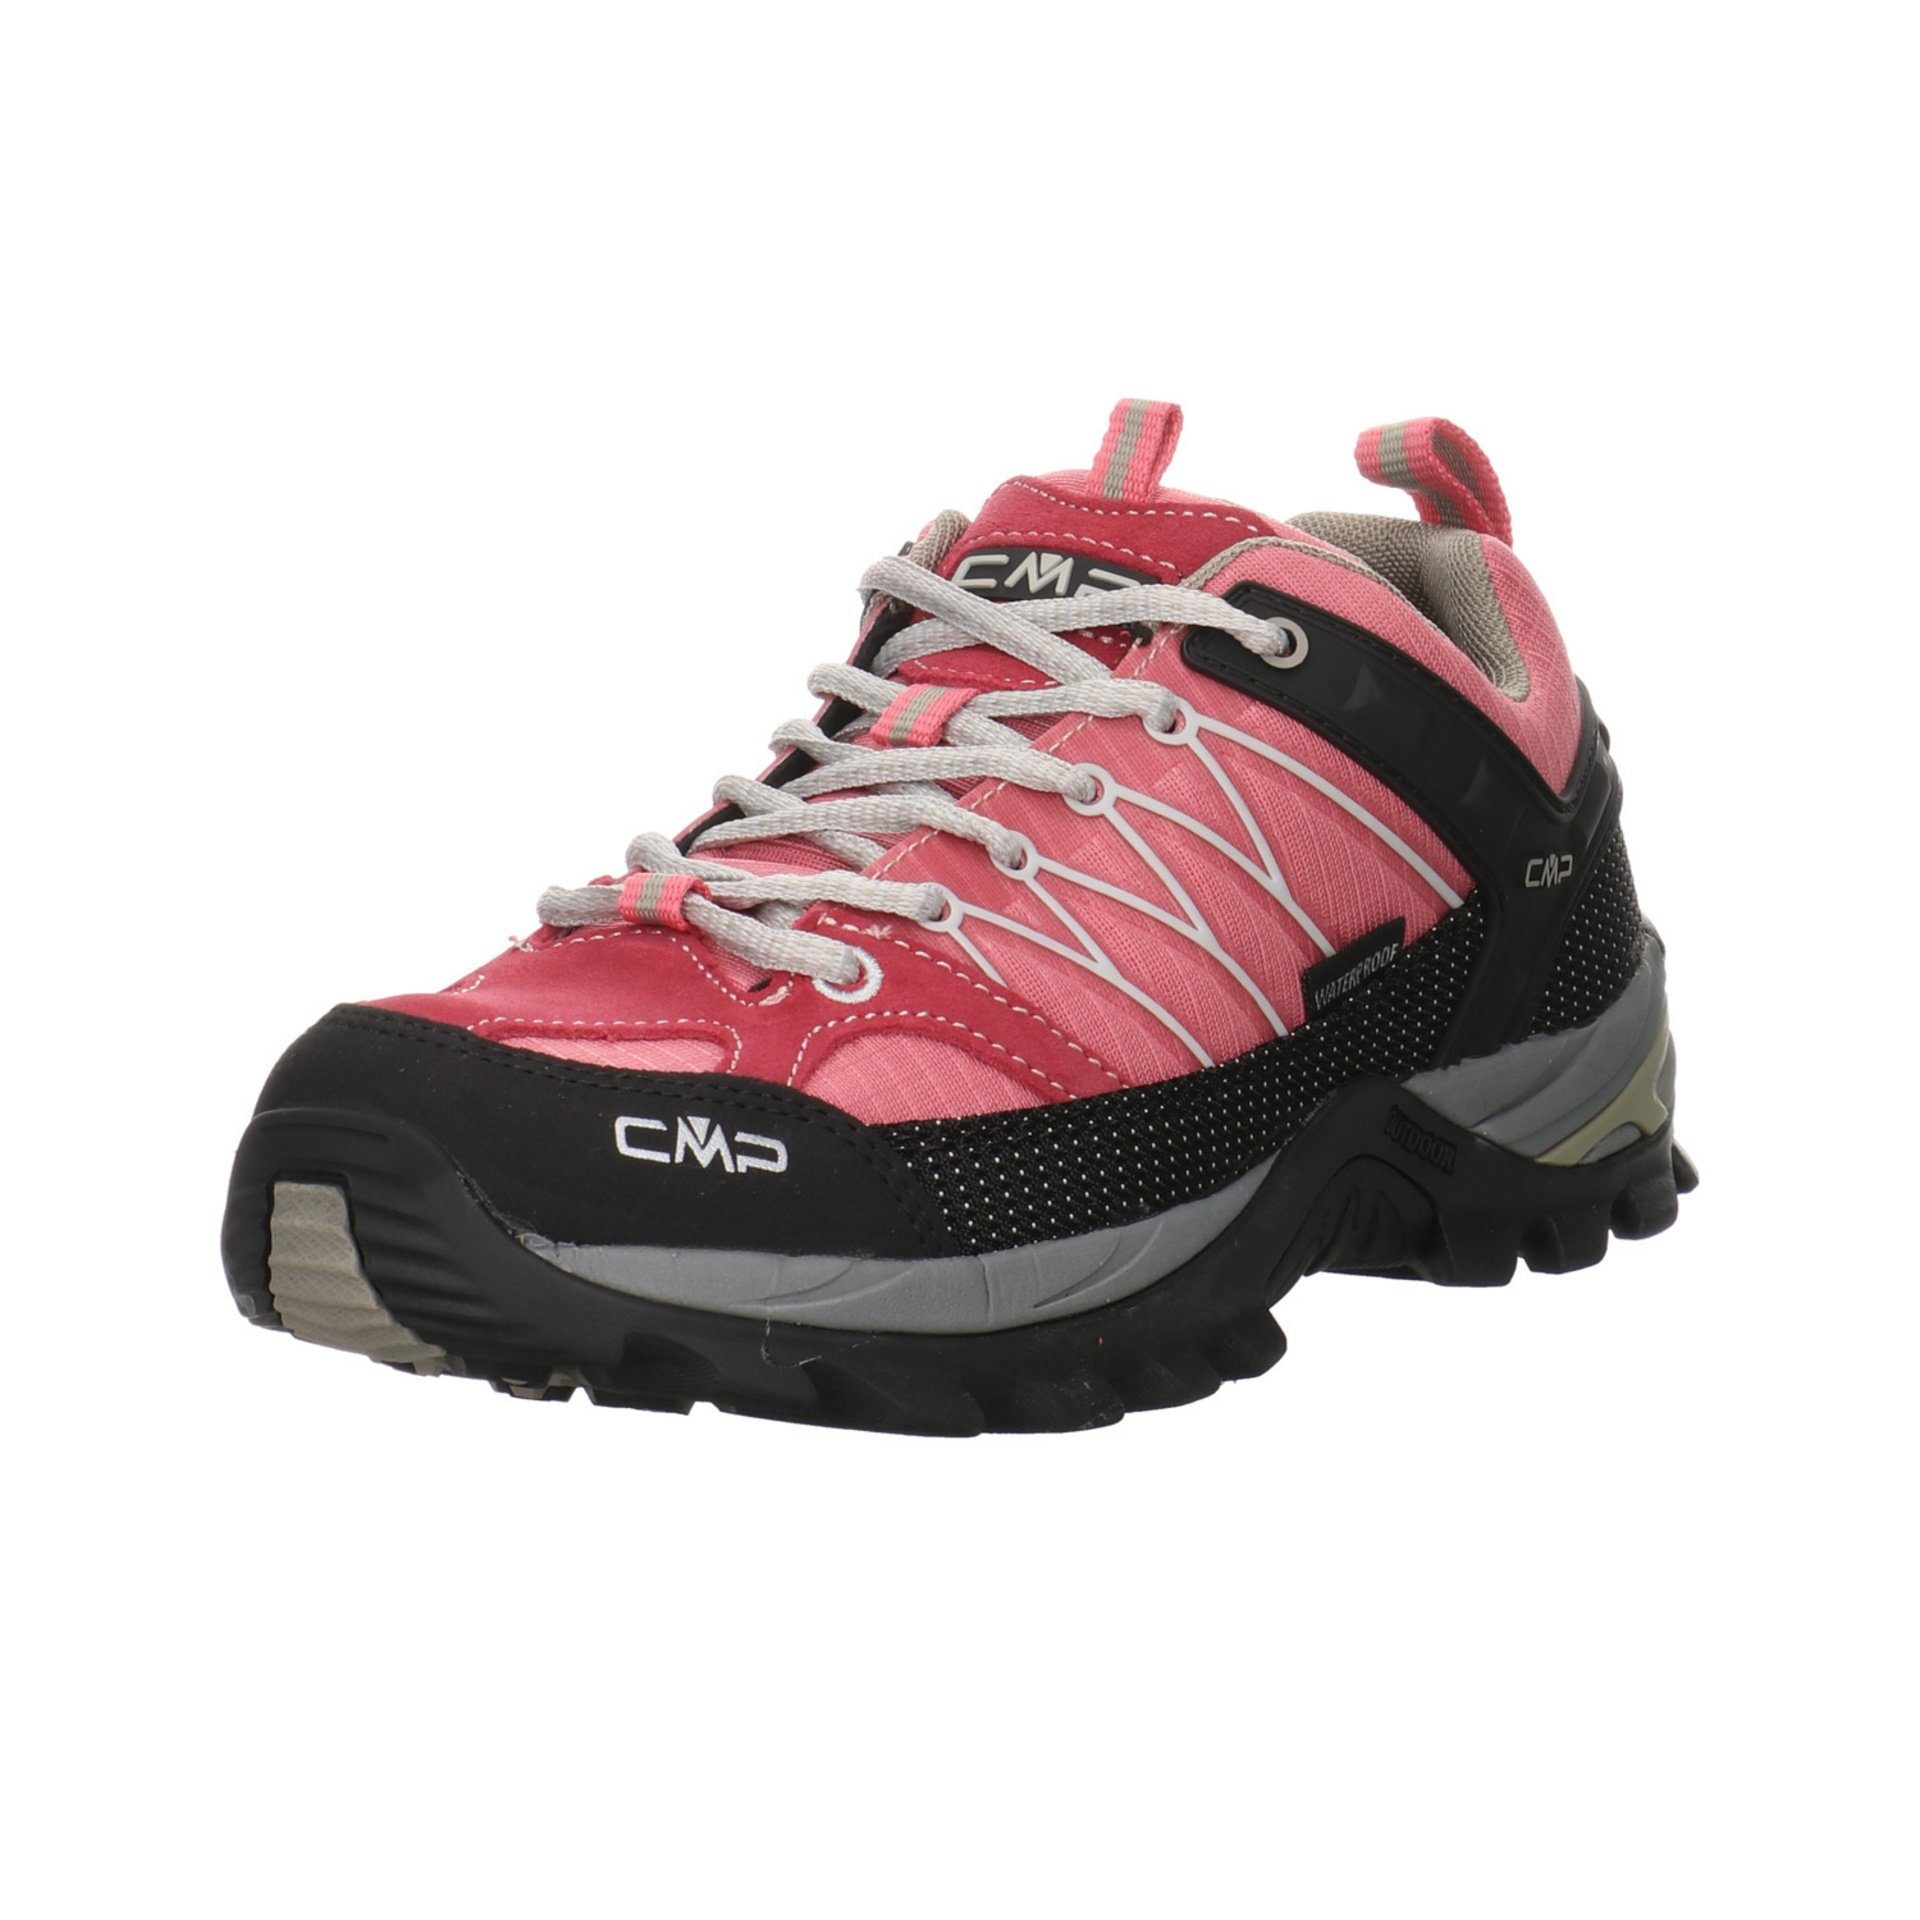 CMP Damen Schuhe Outdoor Rigel Low Outdoorschuh Outdoorschuh Leder-/Textilkombination rot+lila kombi-schwa